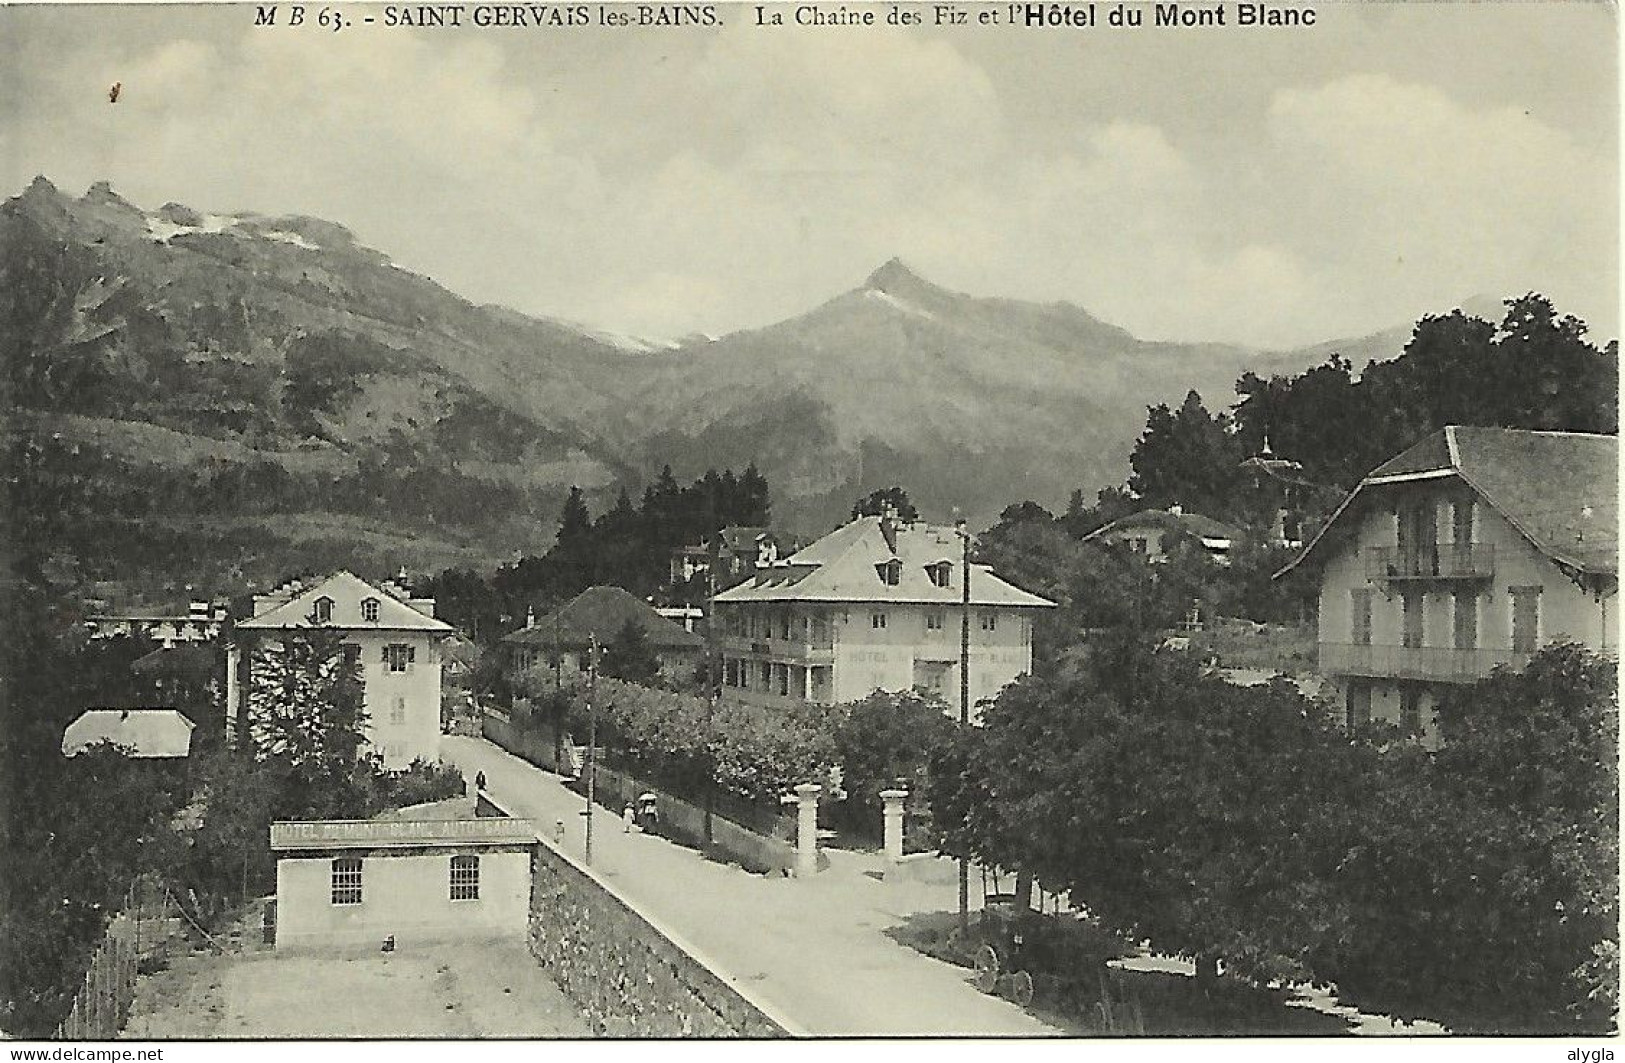 74 - Saint-Gervais-les-Bains - HOTEL MONT-BLANC Et La Chaîne Des Fiz - Dos Vierge - éd. M. BOURREY N° 63 - Saint-Gervais-les-Bains